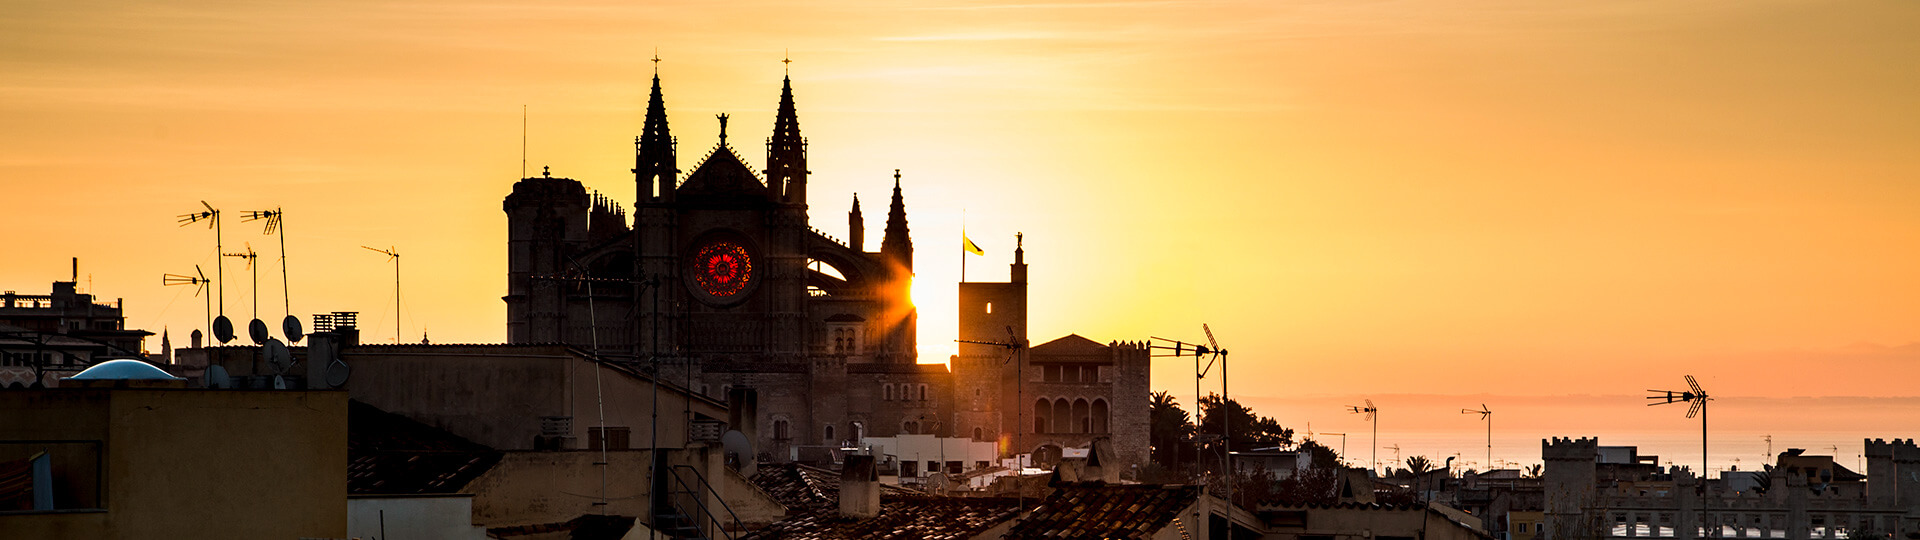 Katedra w Palma de Mallorca o zachodzie słońca